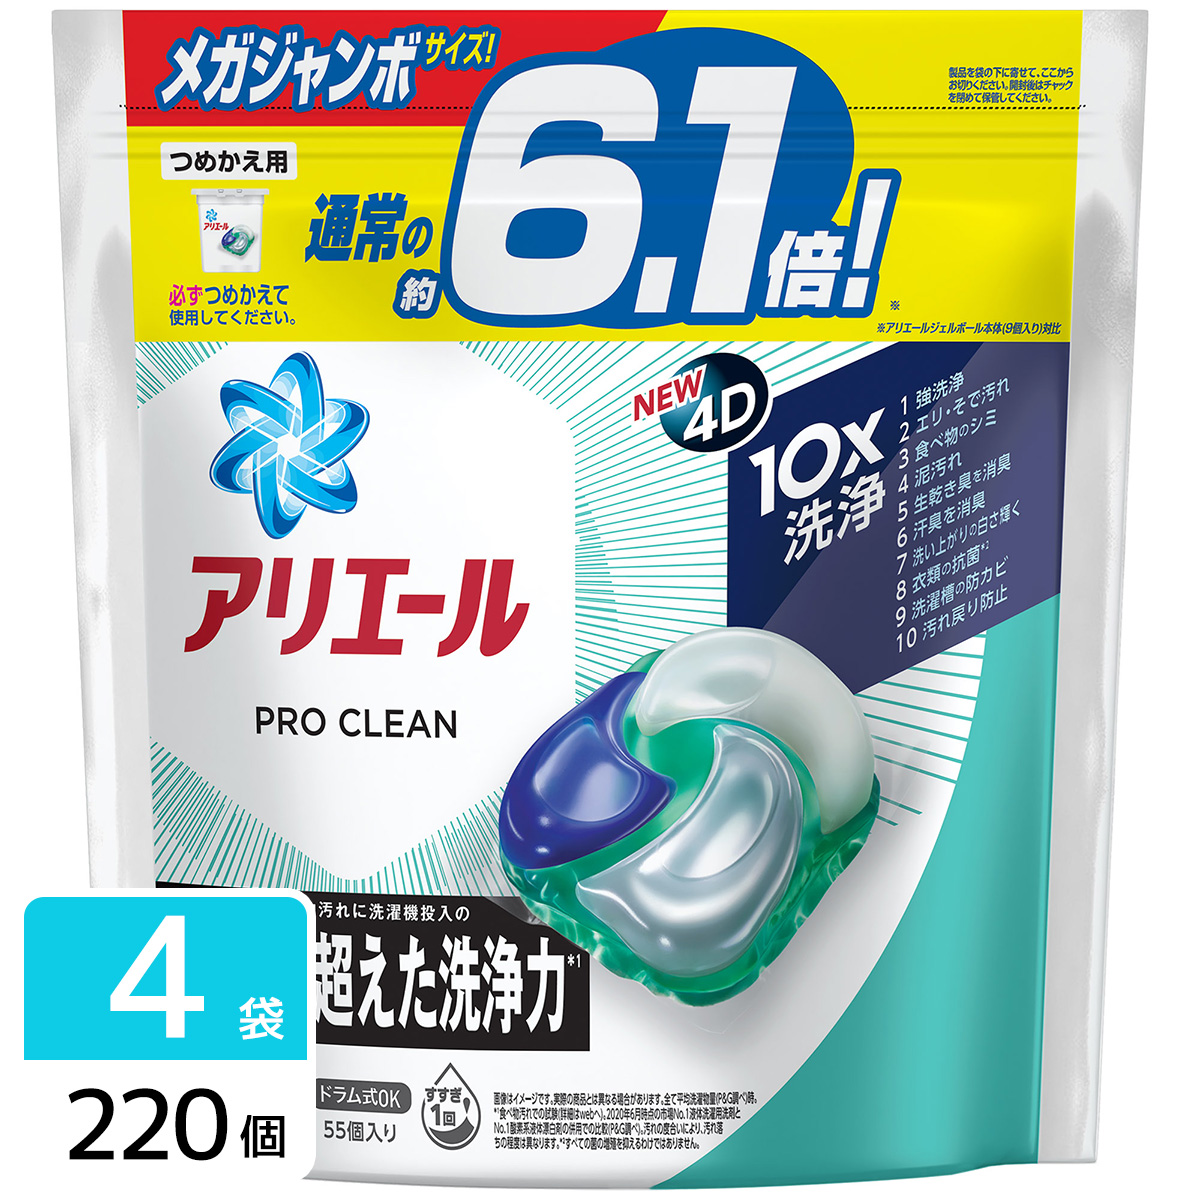 アリエール ジェルボール4D プロクリーン 洗濯洗剤 詰め替え メガジャンボサイズ 220個(55個×4袋)